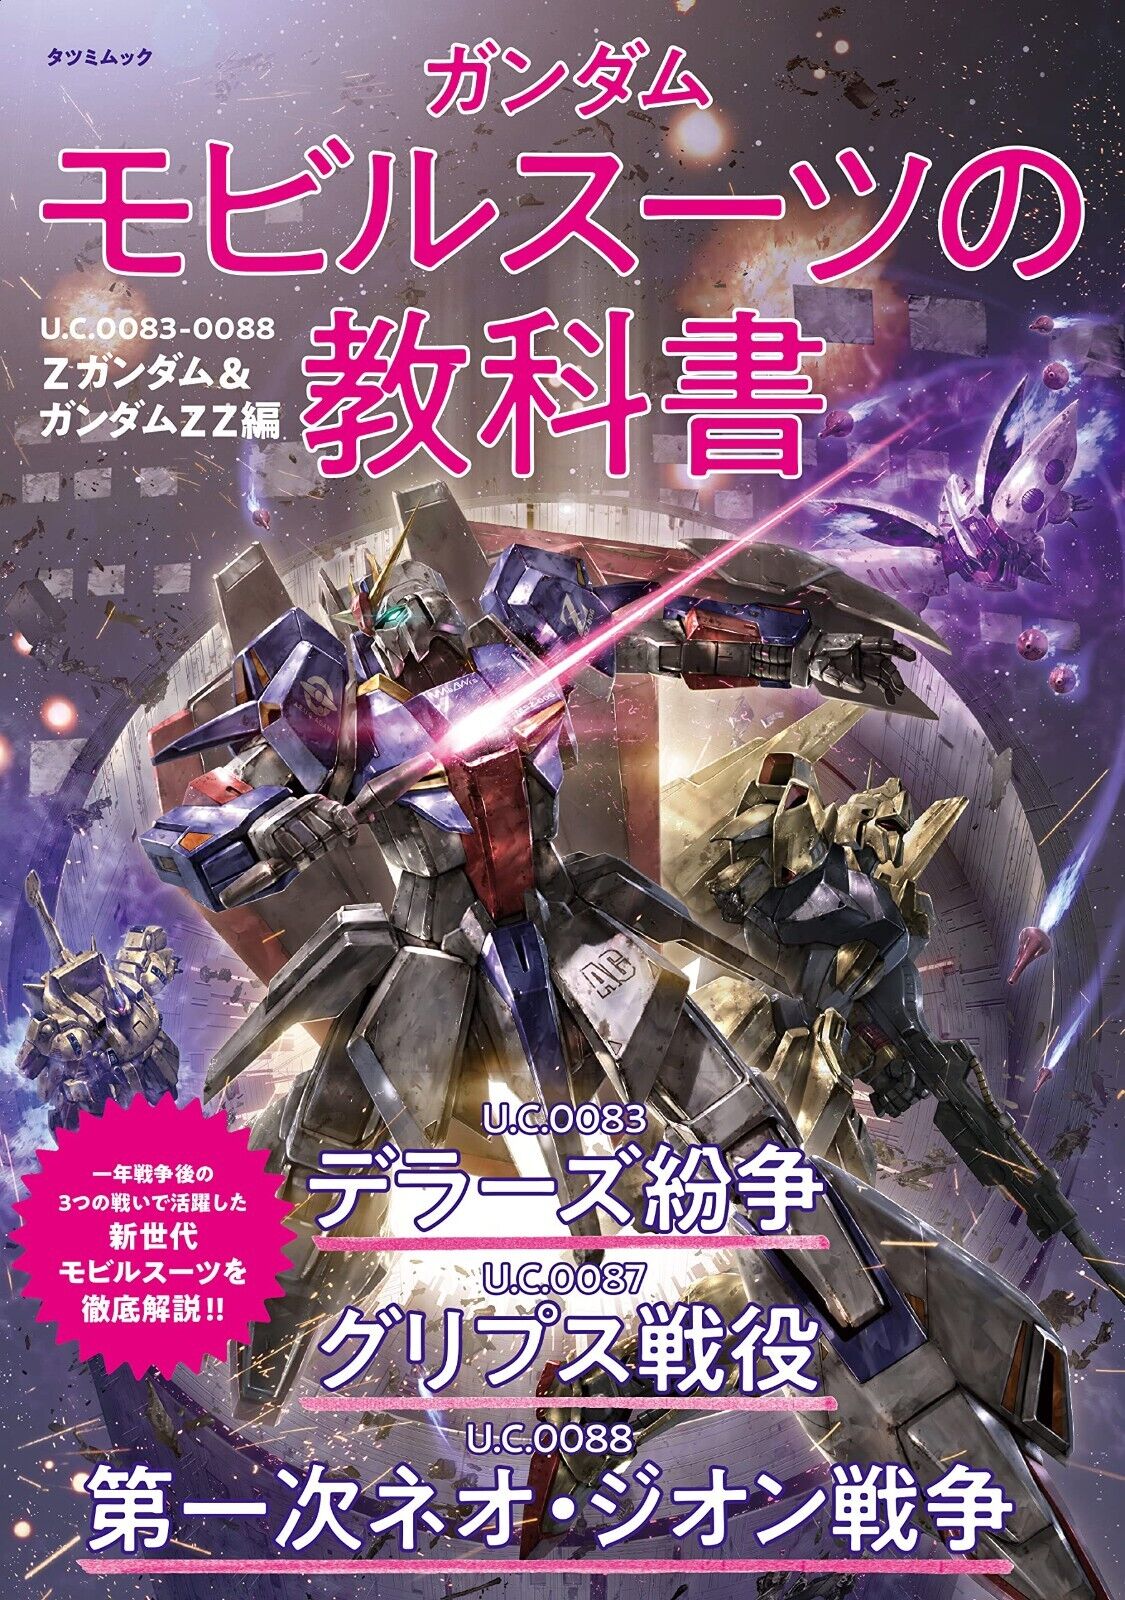 Gundam Mobile Suit Textbook Mobile Suit Zeta Gundam - ZZ | JAPAN Anime